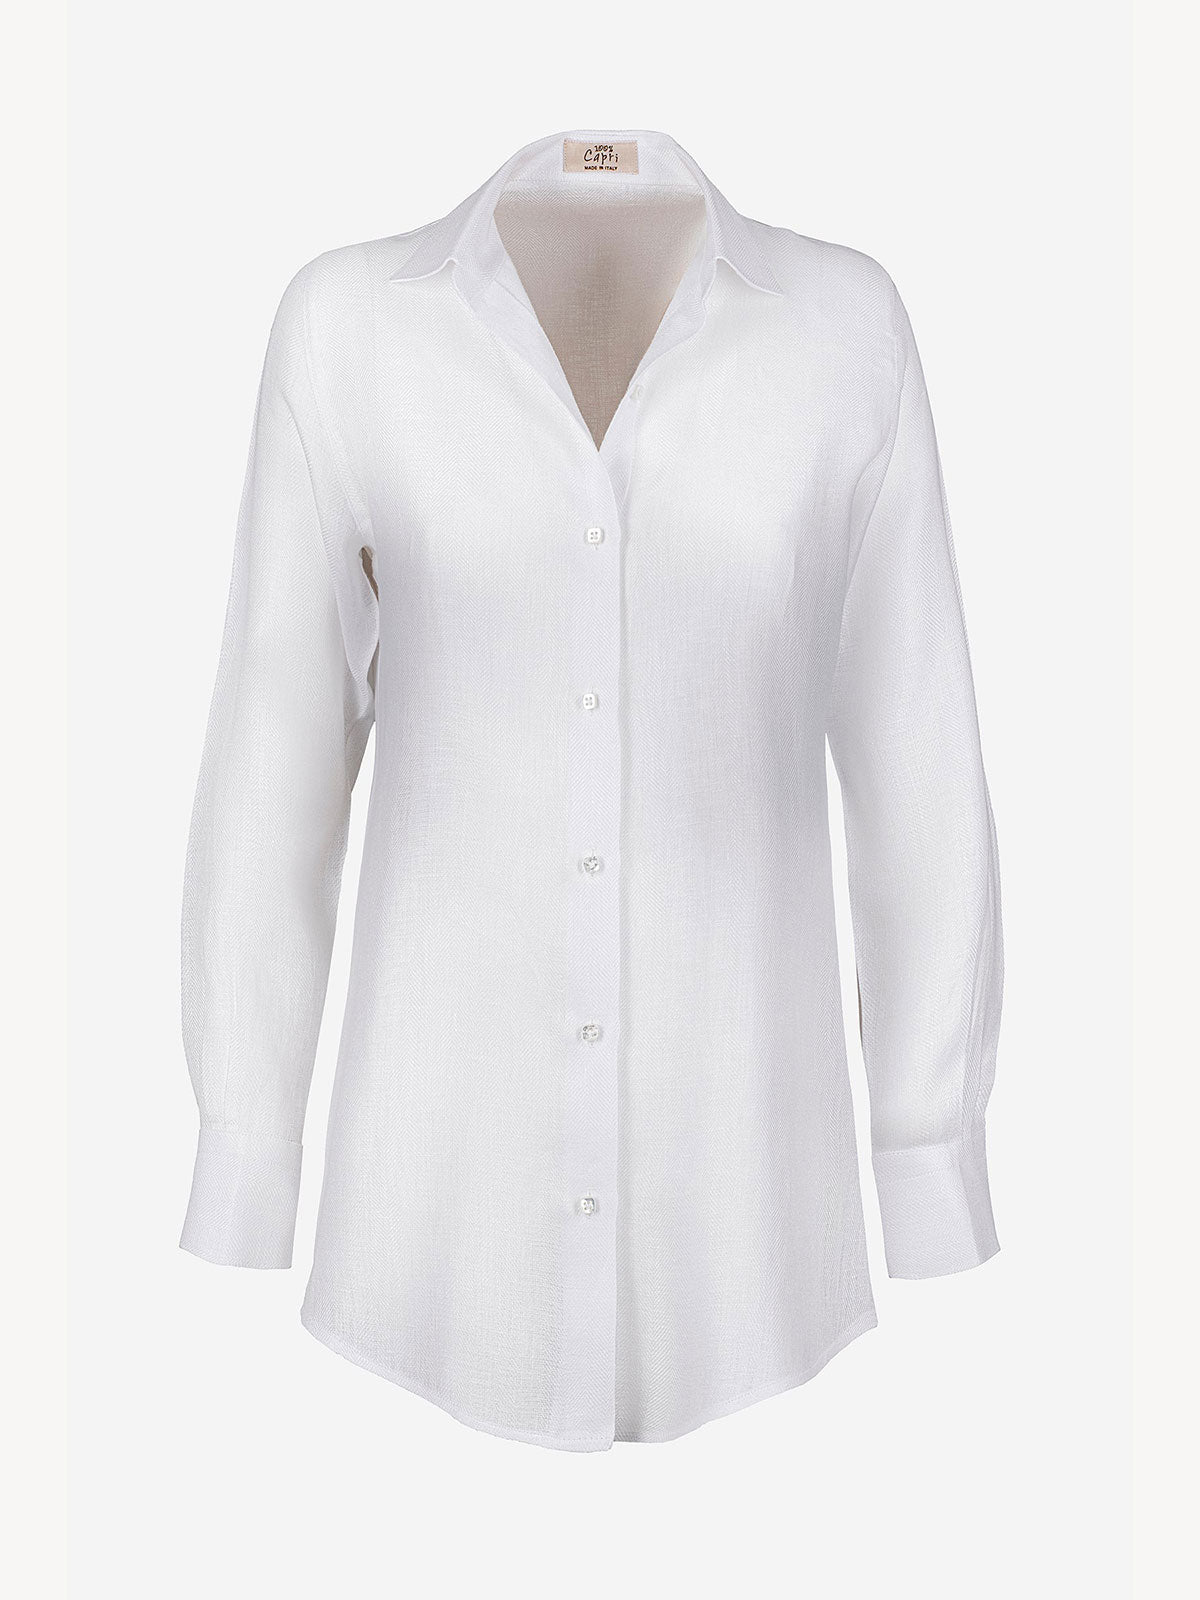 Camicia Chic Spigata 100% Capri white linen shirt front